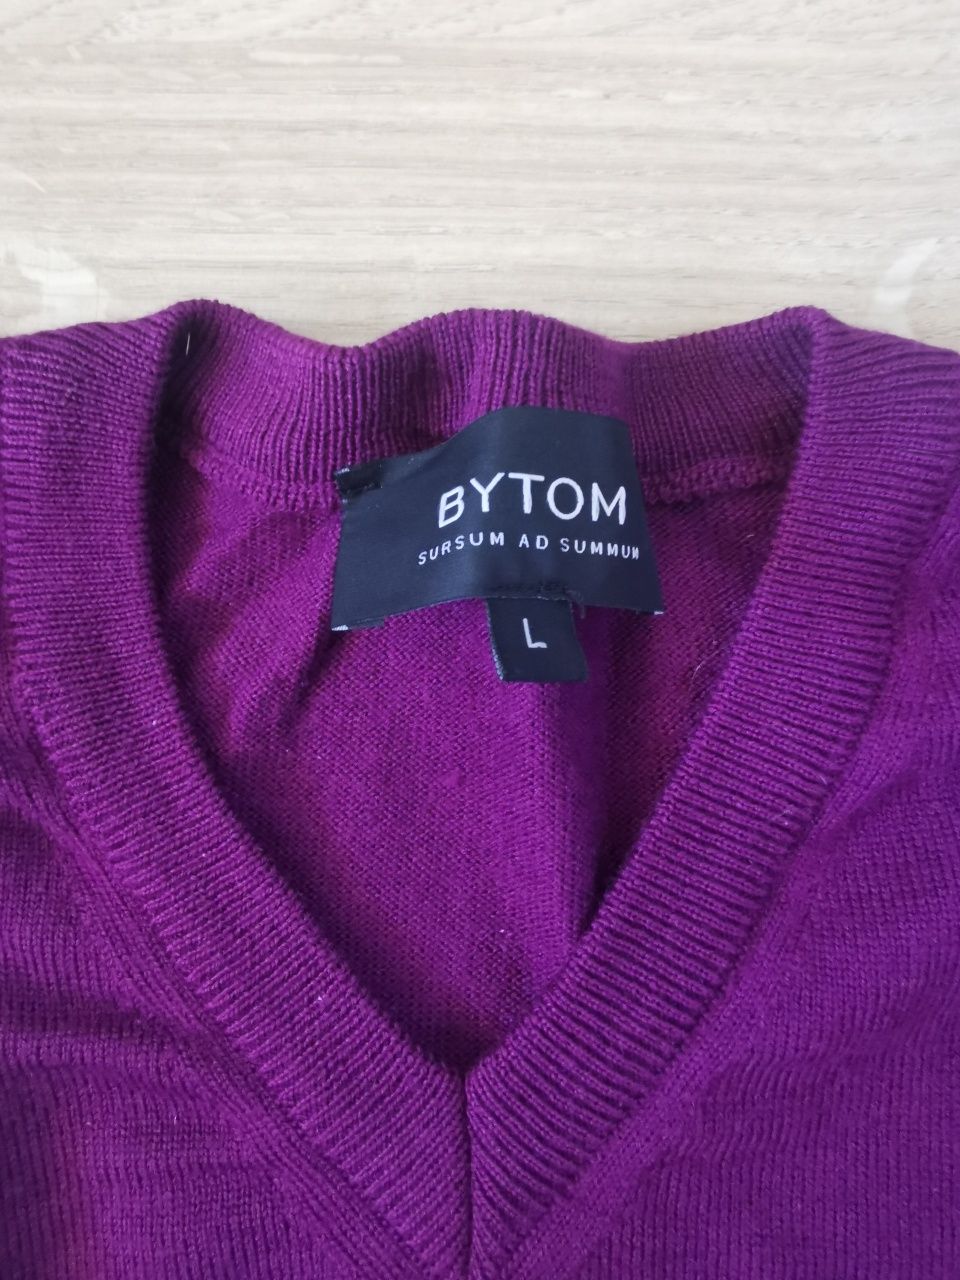 Fioletowy sweter 100% merino, Bytom, rozmiar L